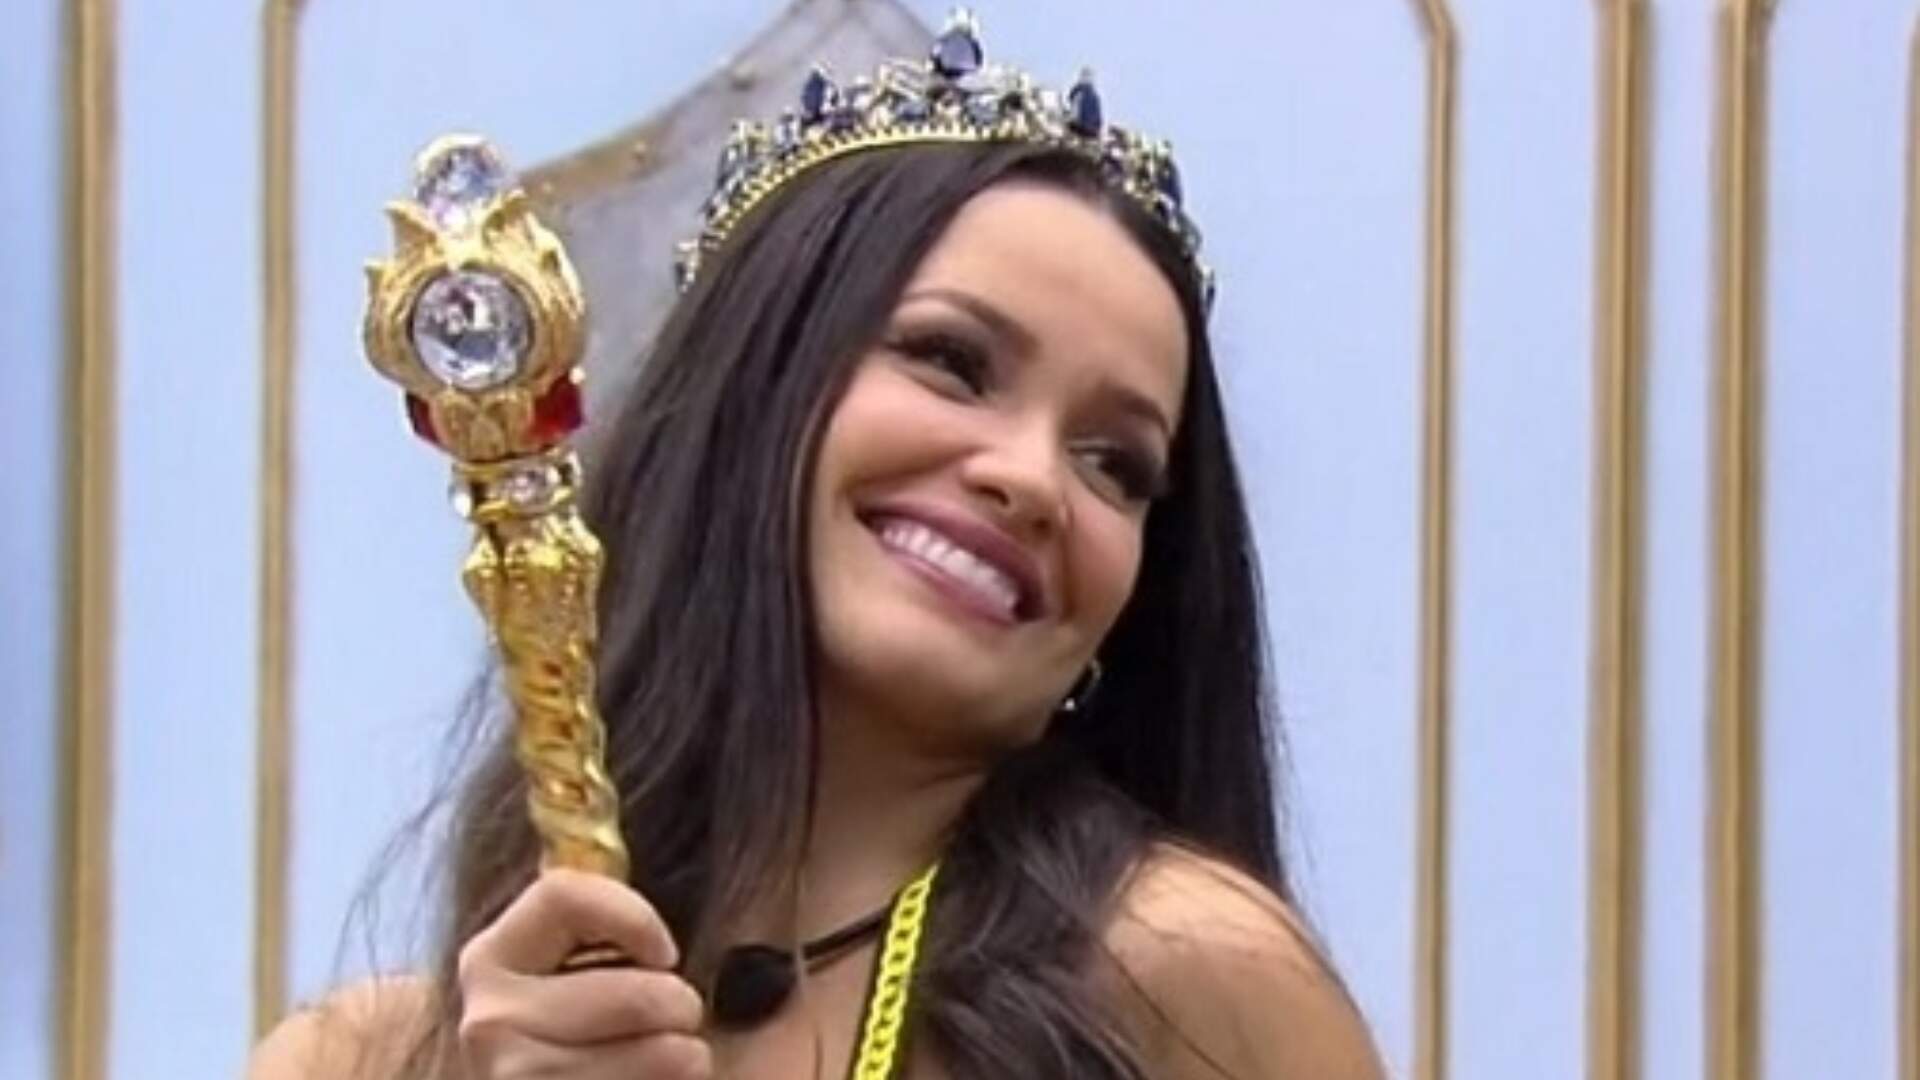 Juliette opina pela primeira vez sobre mudança no contrato da Globo e dá conselho: “Só fama não adianta” - Metropolitana FM